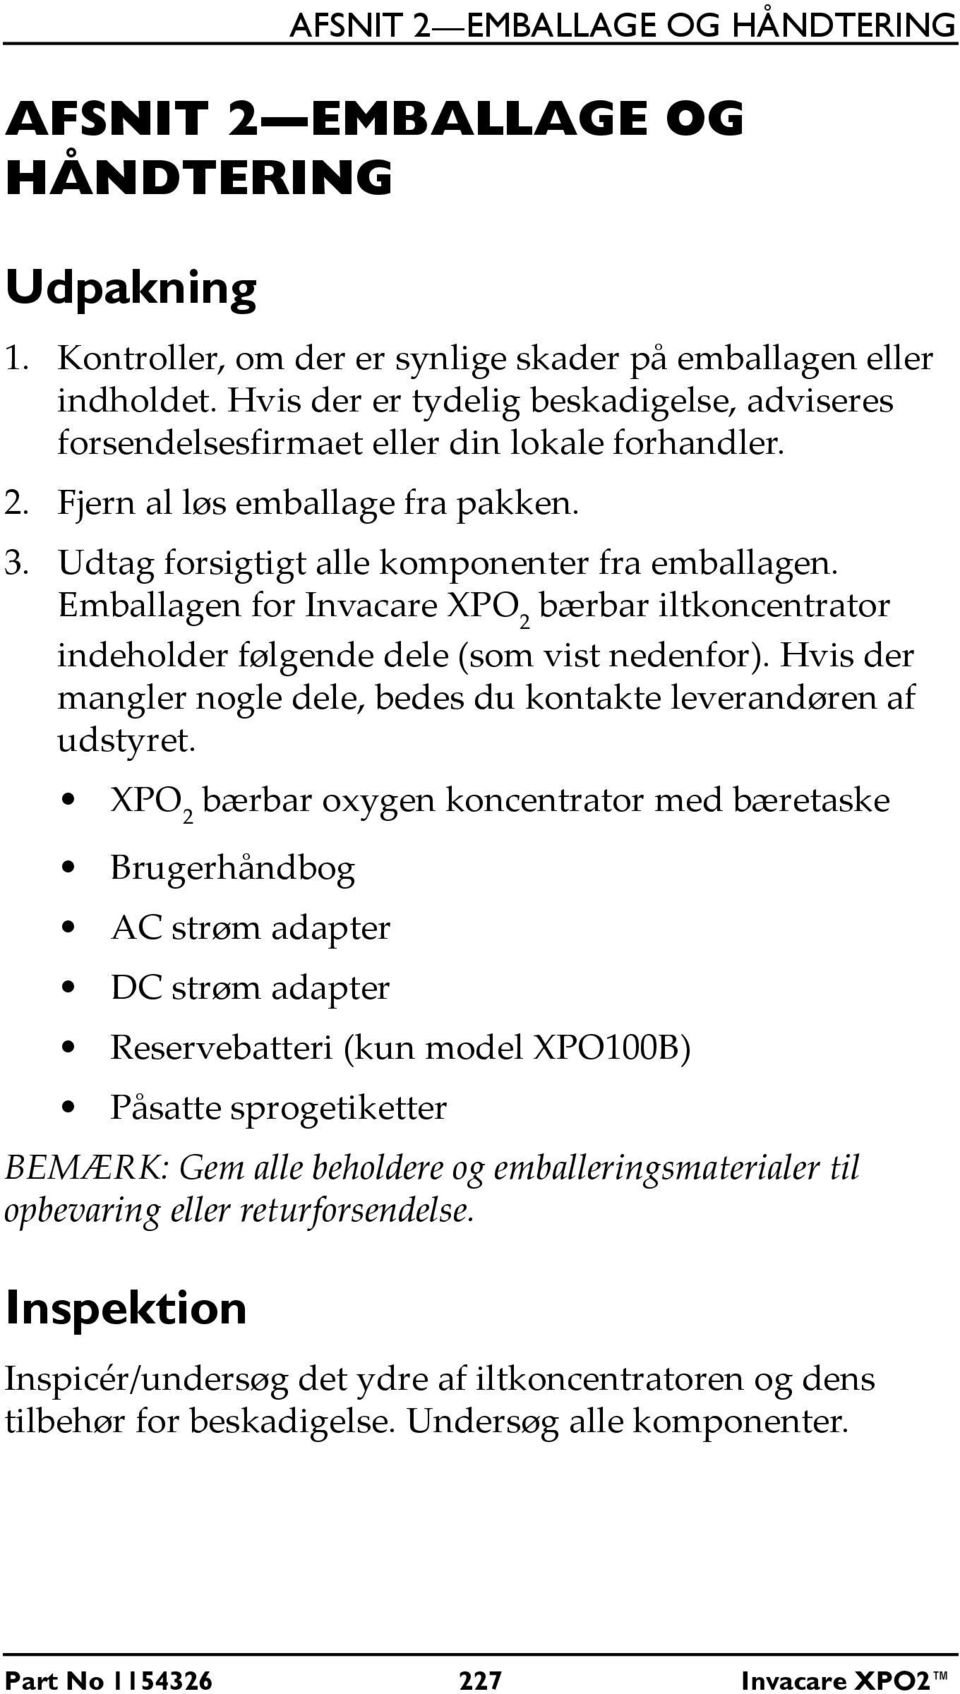 Emballagen for Invacare XPO 2 bærbar iltkoncentrator indeholder følgende dele (som vist nedenfor). Hvis der mangler nogle dele, bedes du kontakte leverandøren af udstyret.